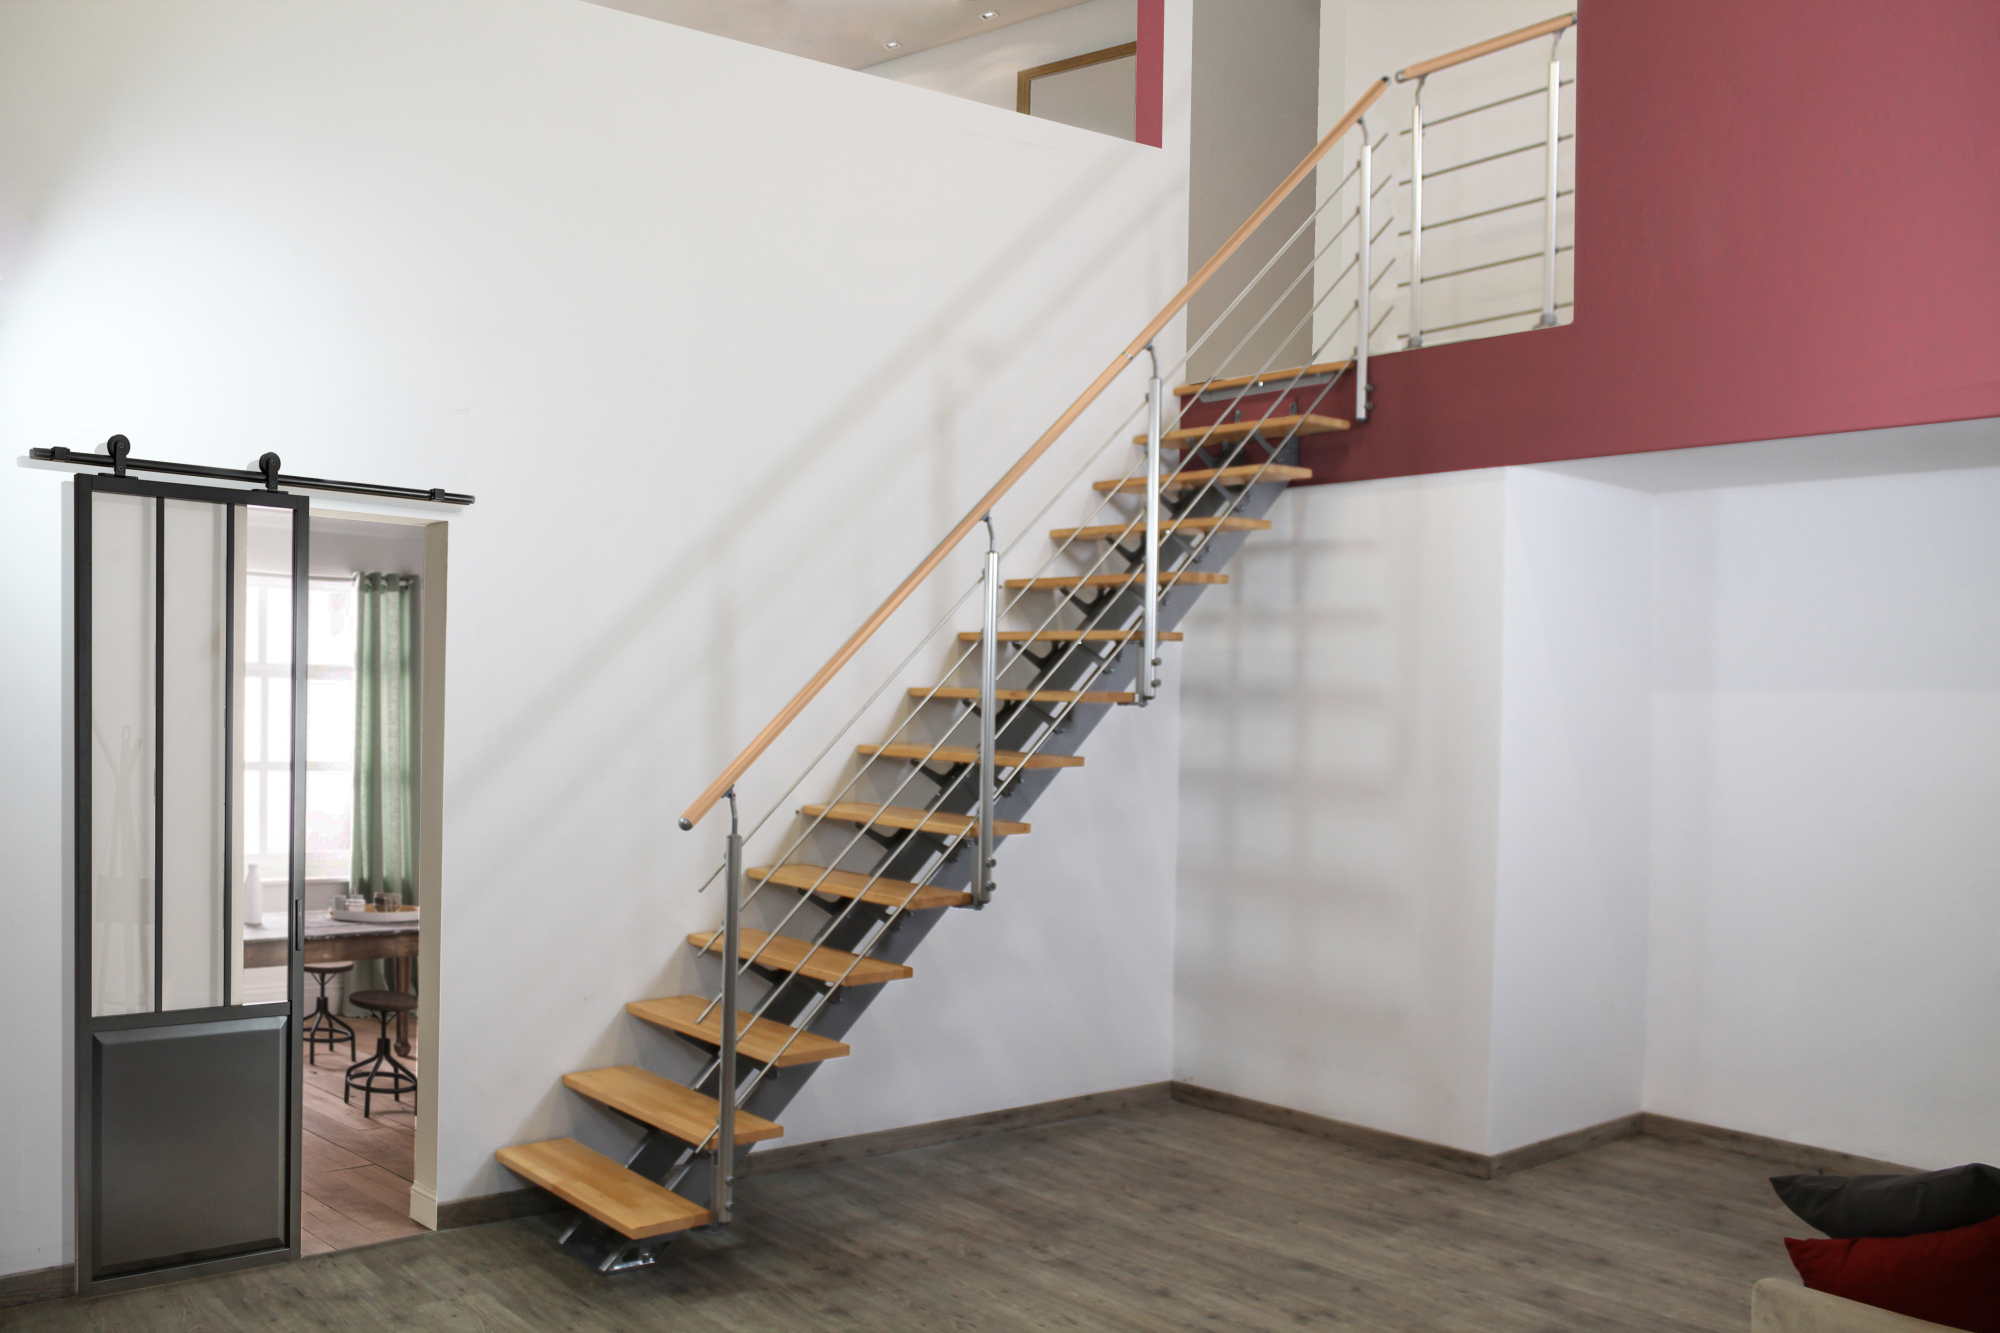 Escalera recta doble viga uso interior ancho total 95cm acabado gris/haya/haya